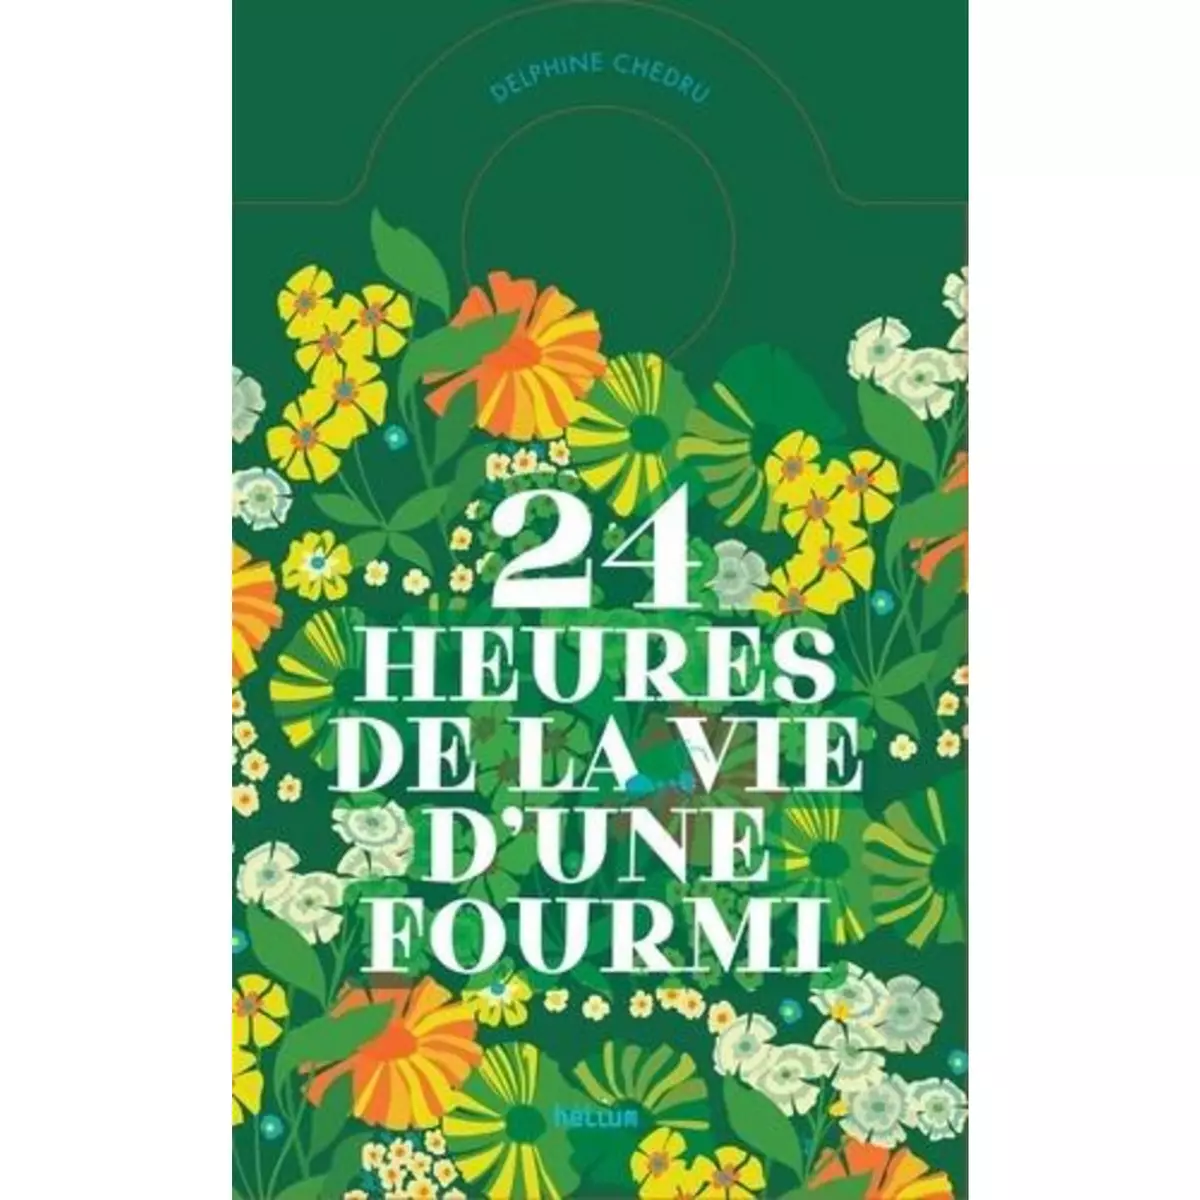  24 HEURES DE LA VIE D'UNE FOURMI, Chedru Delphine